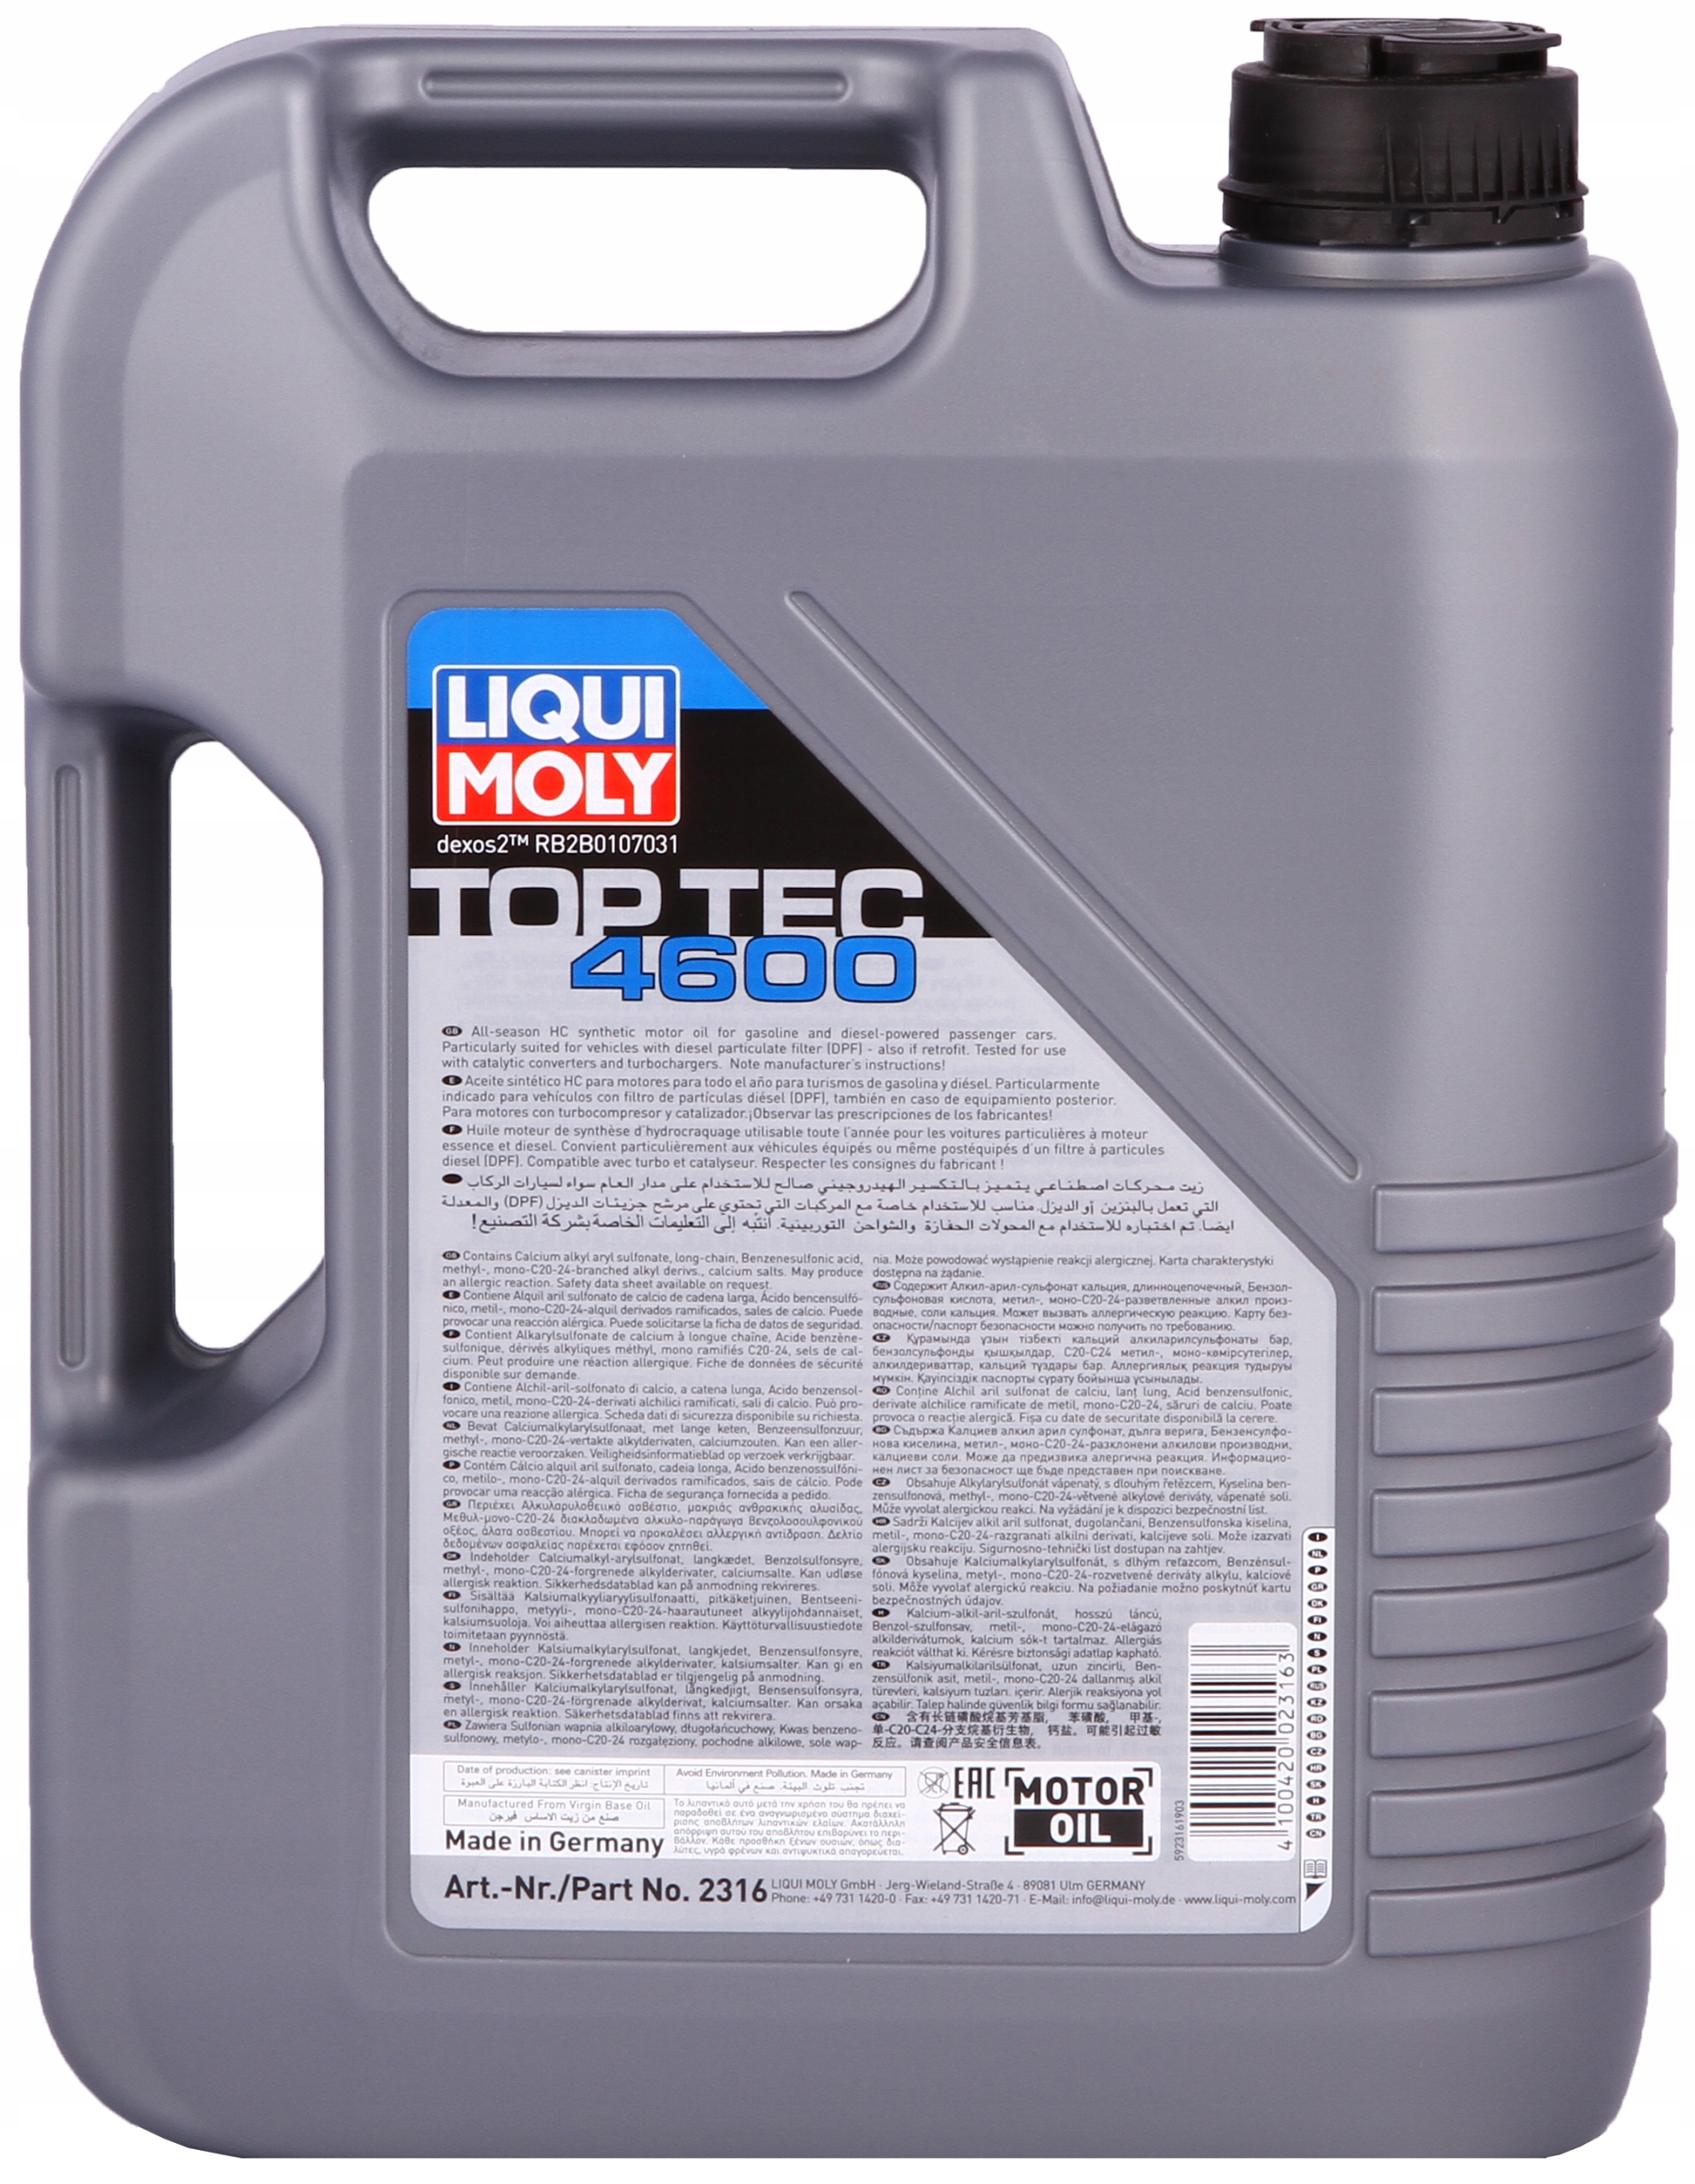 Aceite de motor Liqui Moly TOP TEC 4600 C2/C3 5w30 5L (2316)